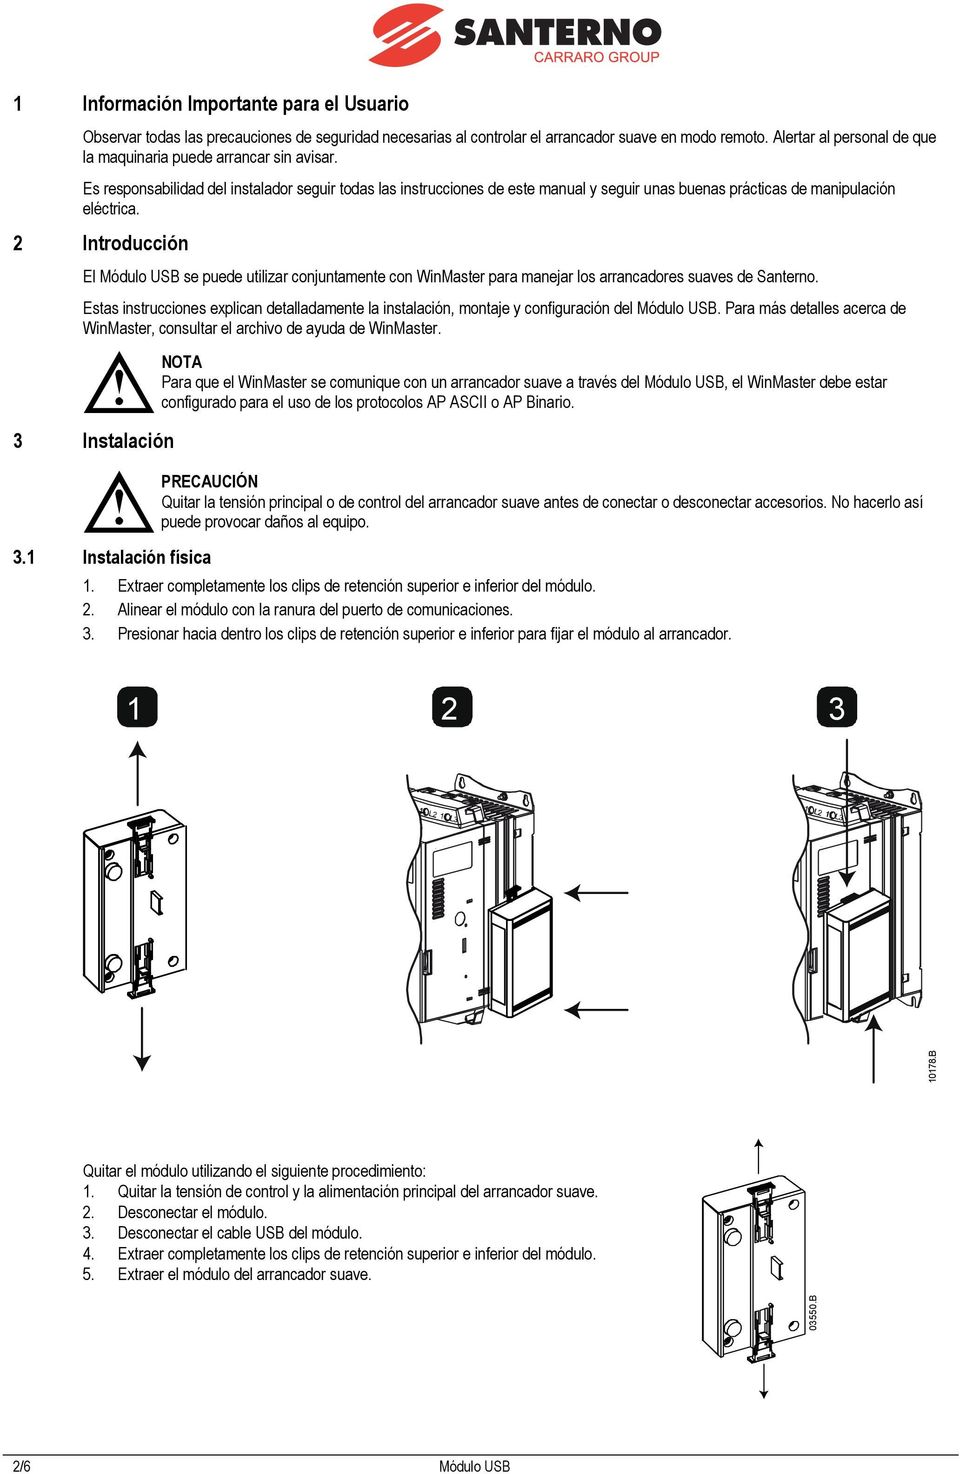 Es responsabilidad del instalador seguir todas las instrucciones de este manual y seguir unas buenas prácticas de manipulación eléctrica.